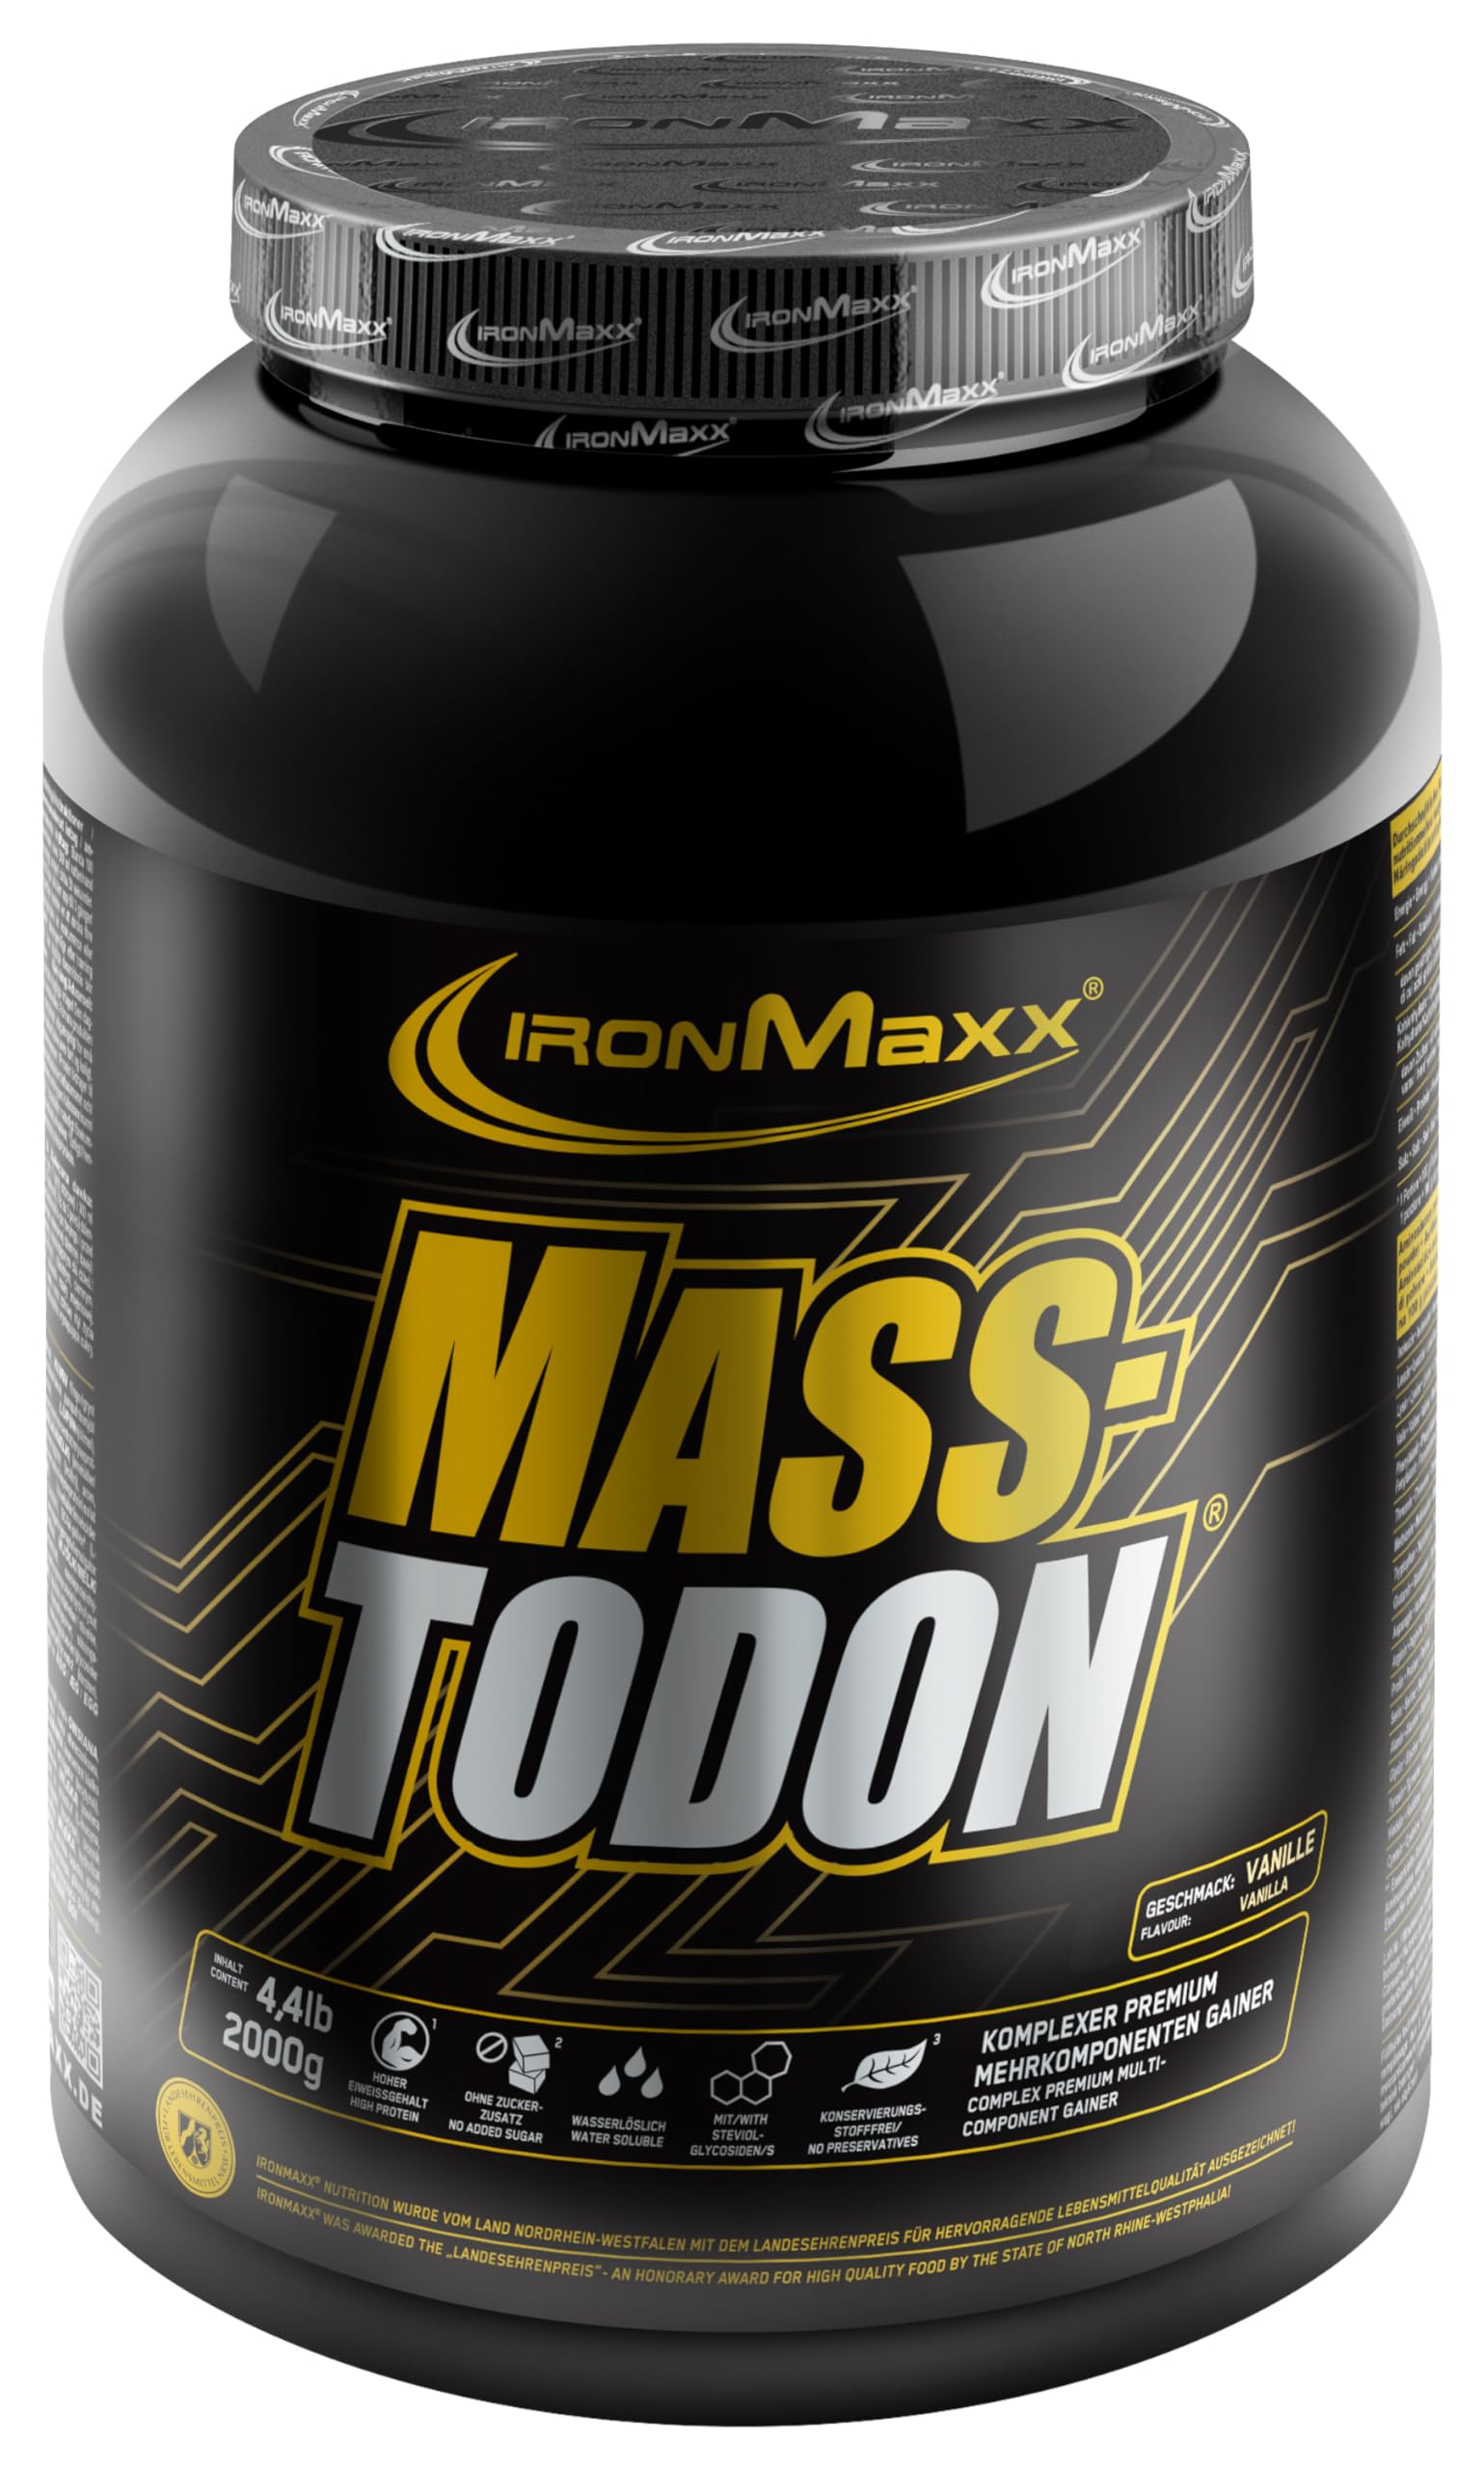 IronMaxx Masstodon - Vanille 2kg Dose, Komplexer Premium mehrkomponenten Gainer, Low Sugar & ohne Konservierungsstoffe